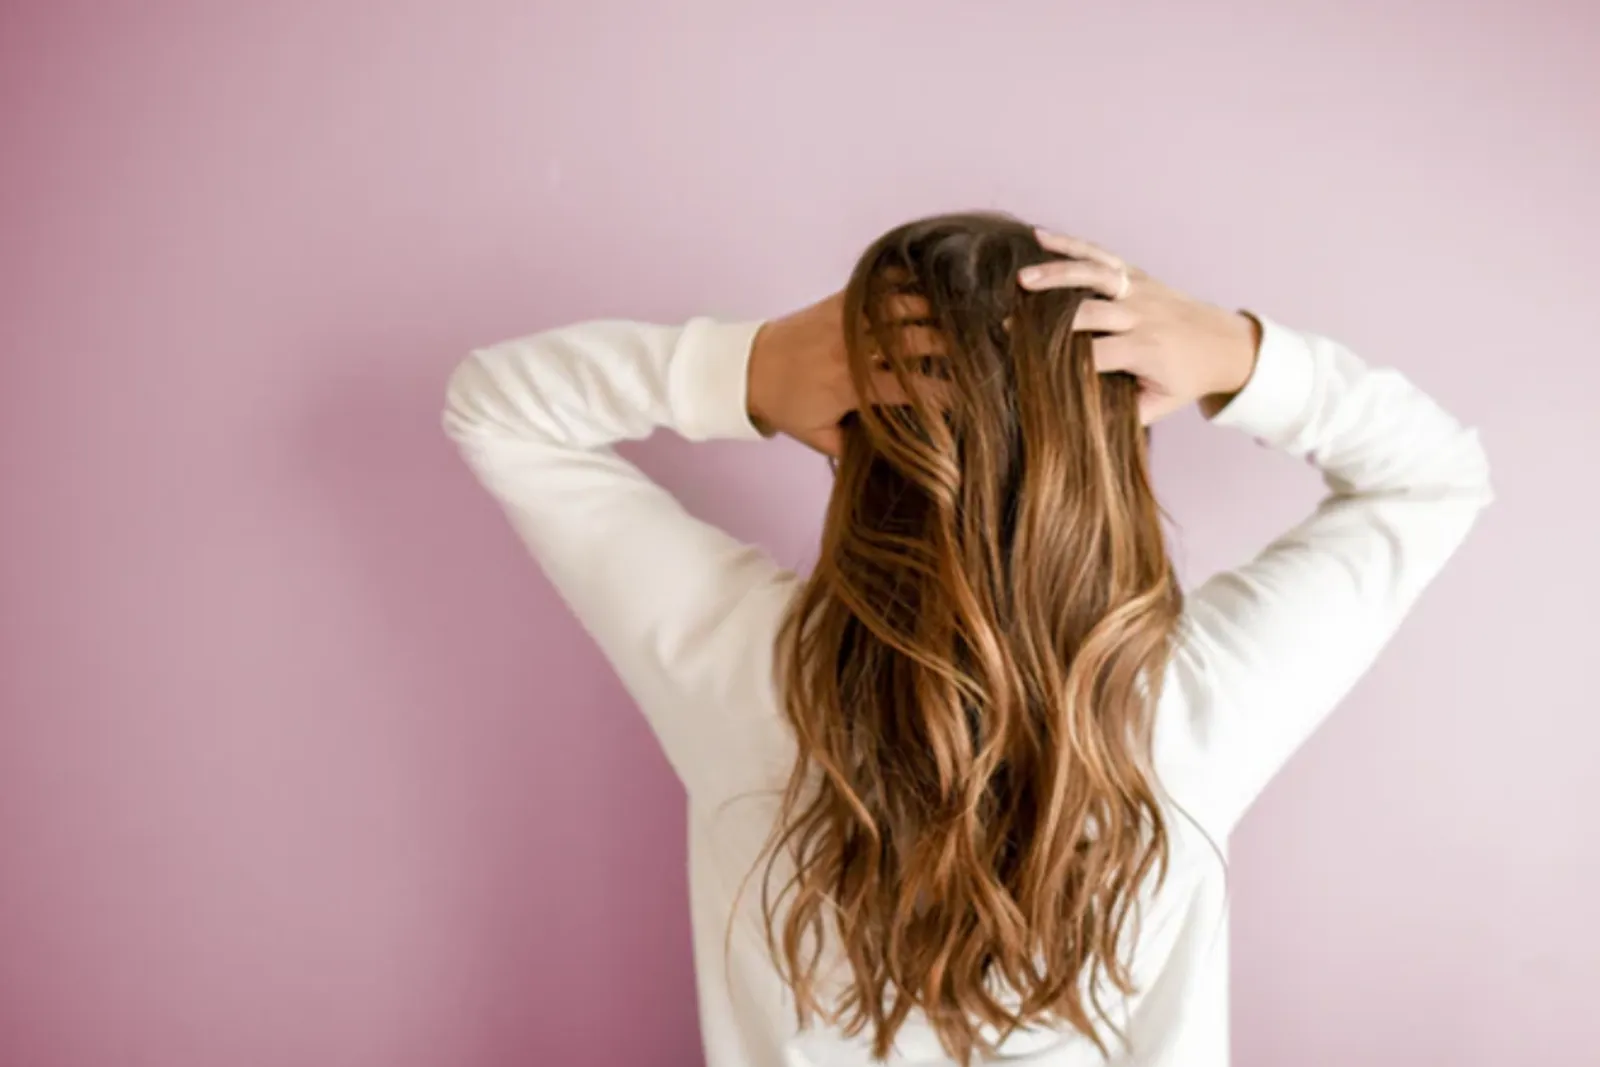 Nggak Bisa Pergi Ke Salon, Cara Mudah Untuk Merawat Rambut Di Rumah